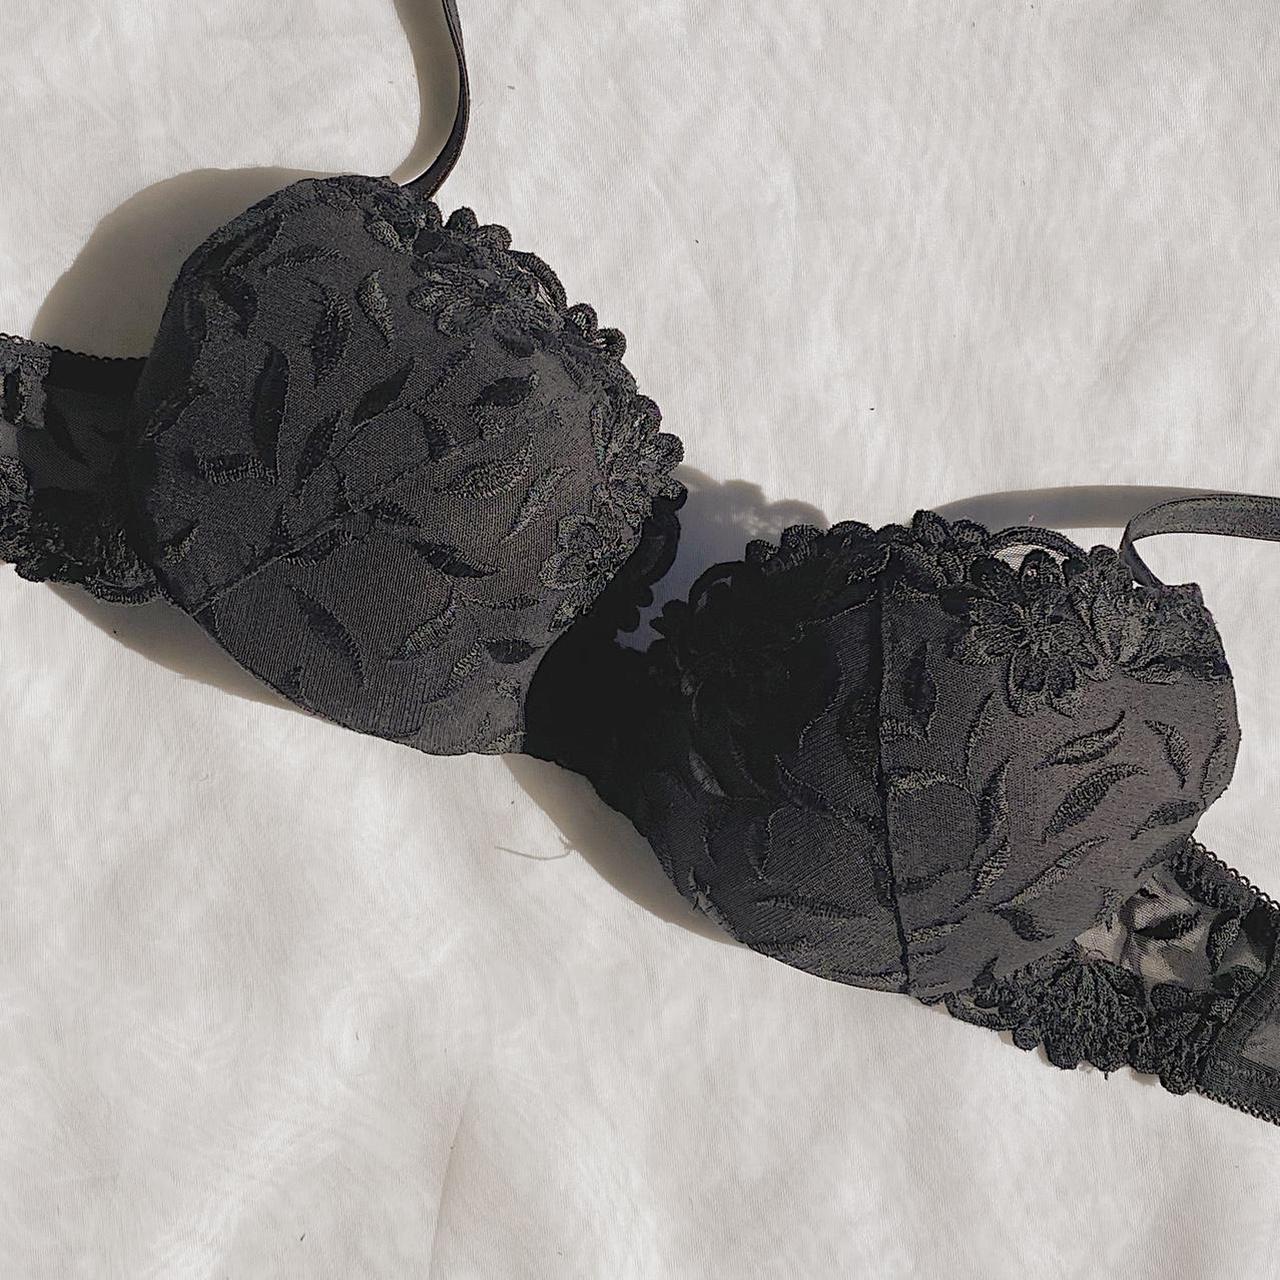 Product Image 2 - Black Padded Wonder Bra

#bras #lingerie